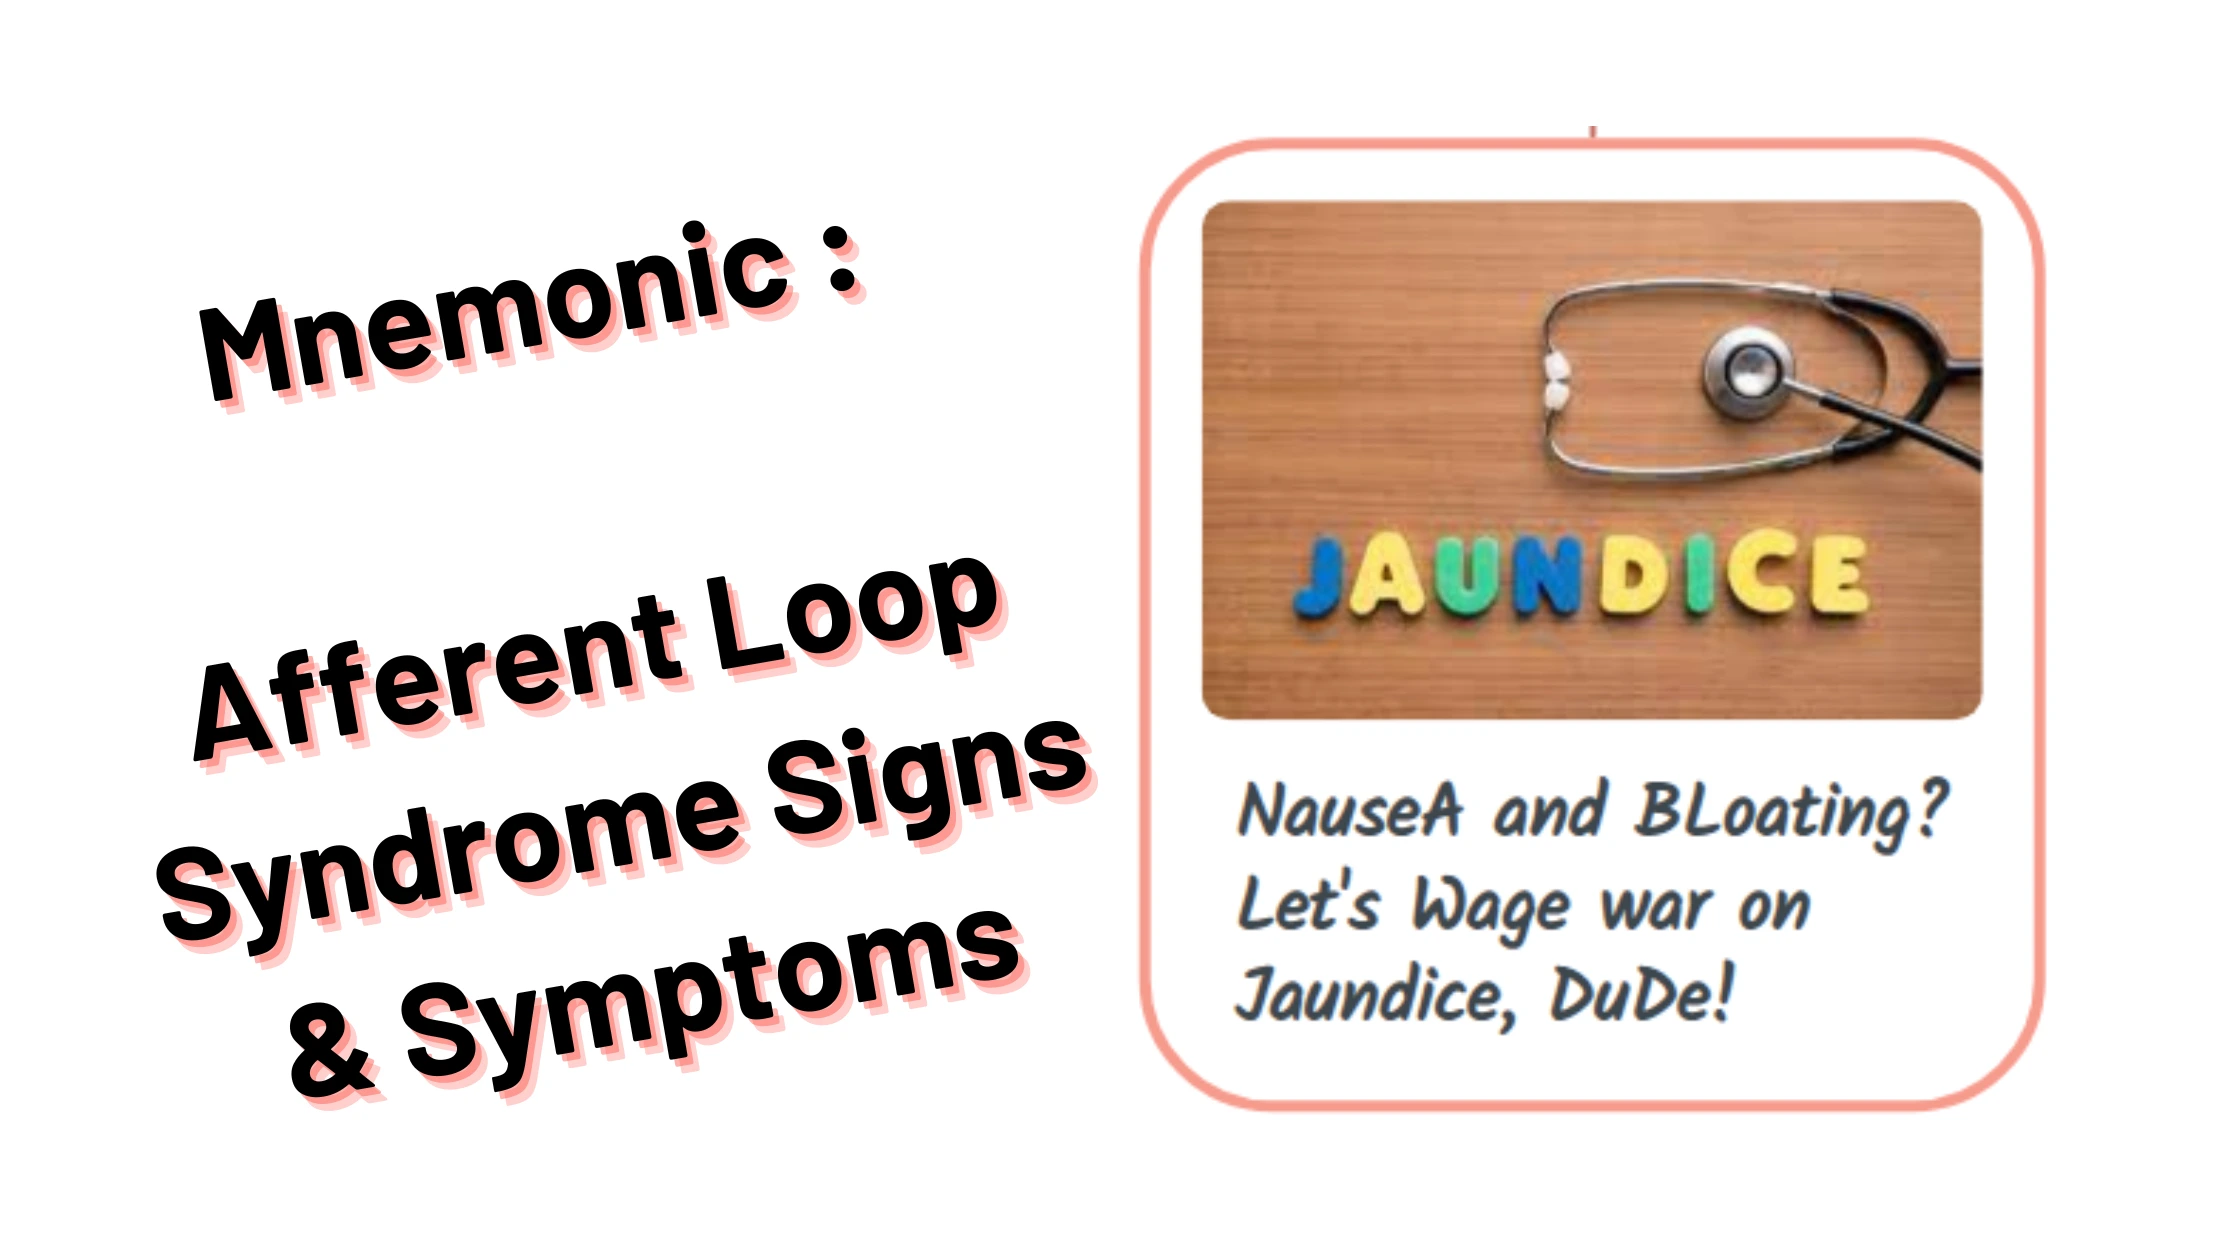 Medical & Nursing mnemonics_Afferent Loop Syndrome Signs & Symptoms